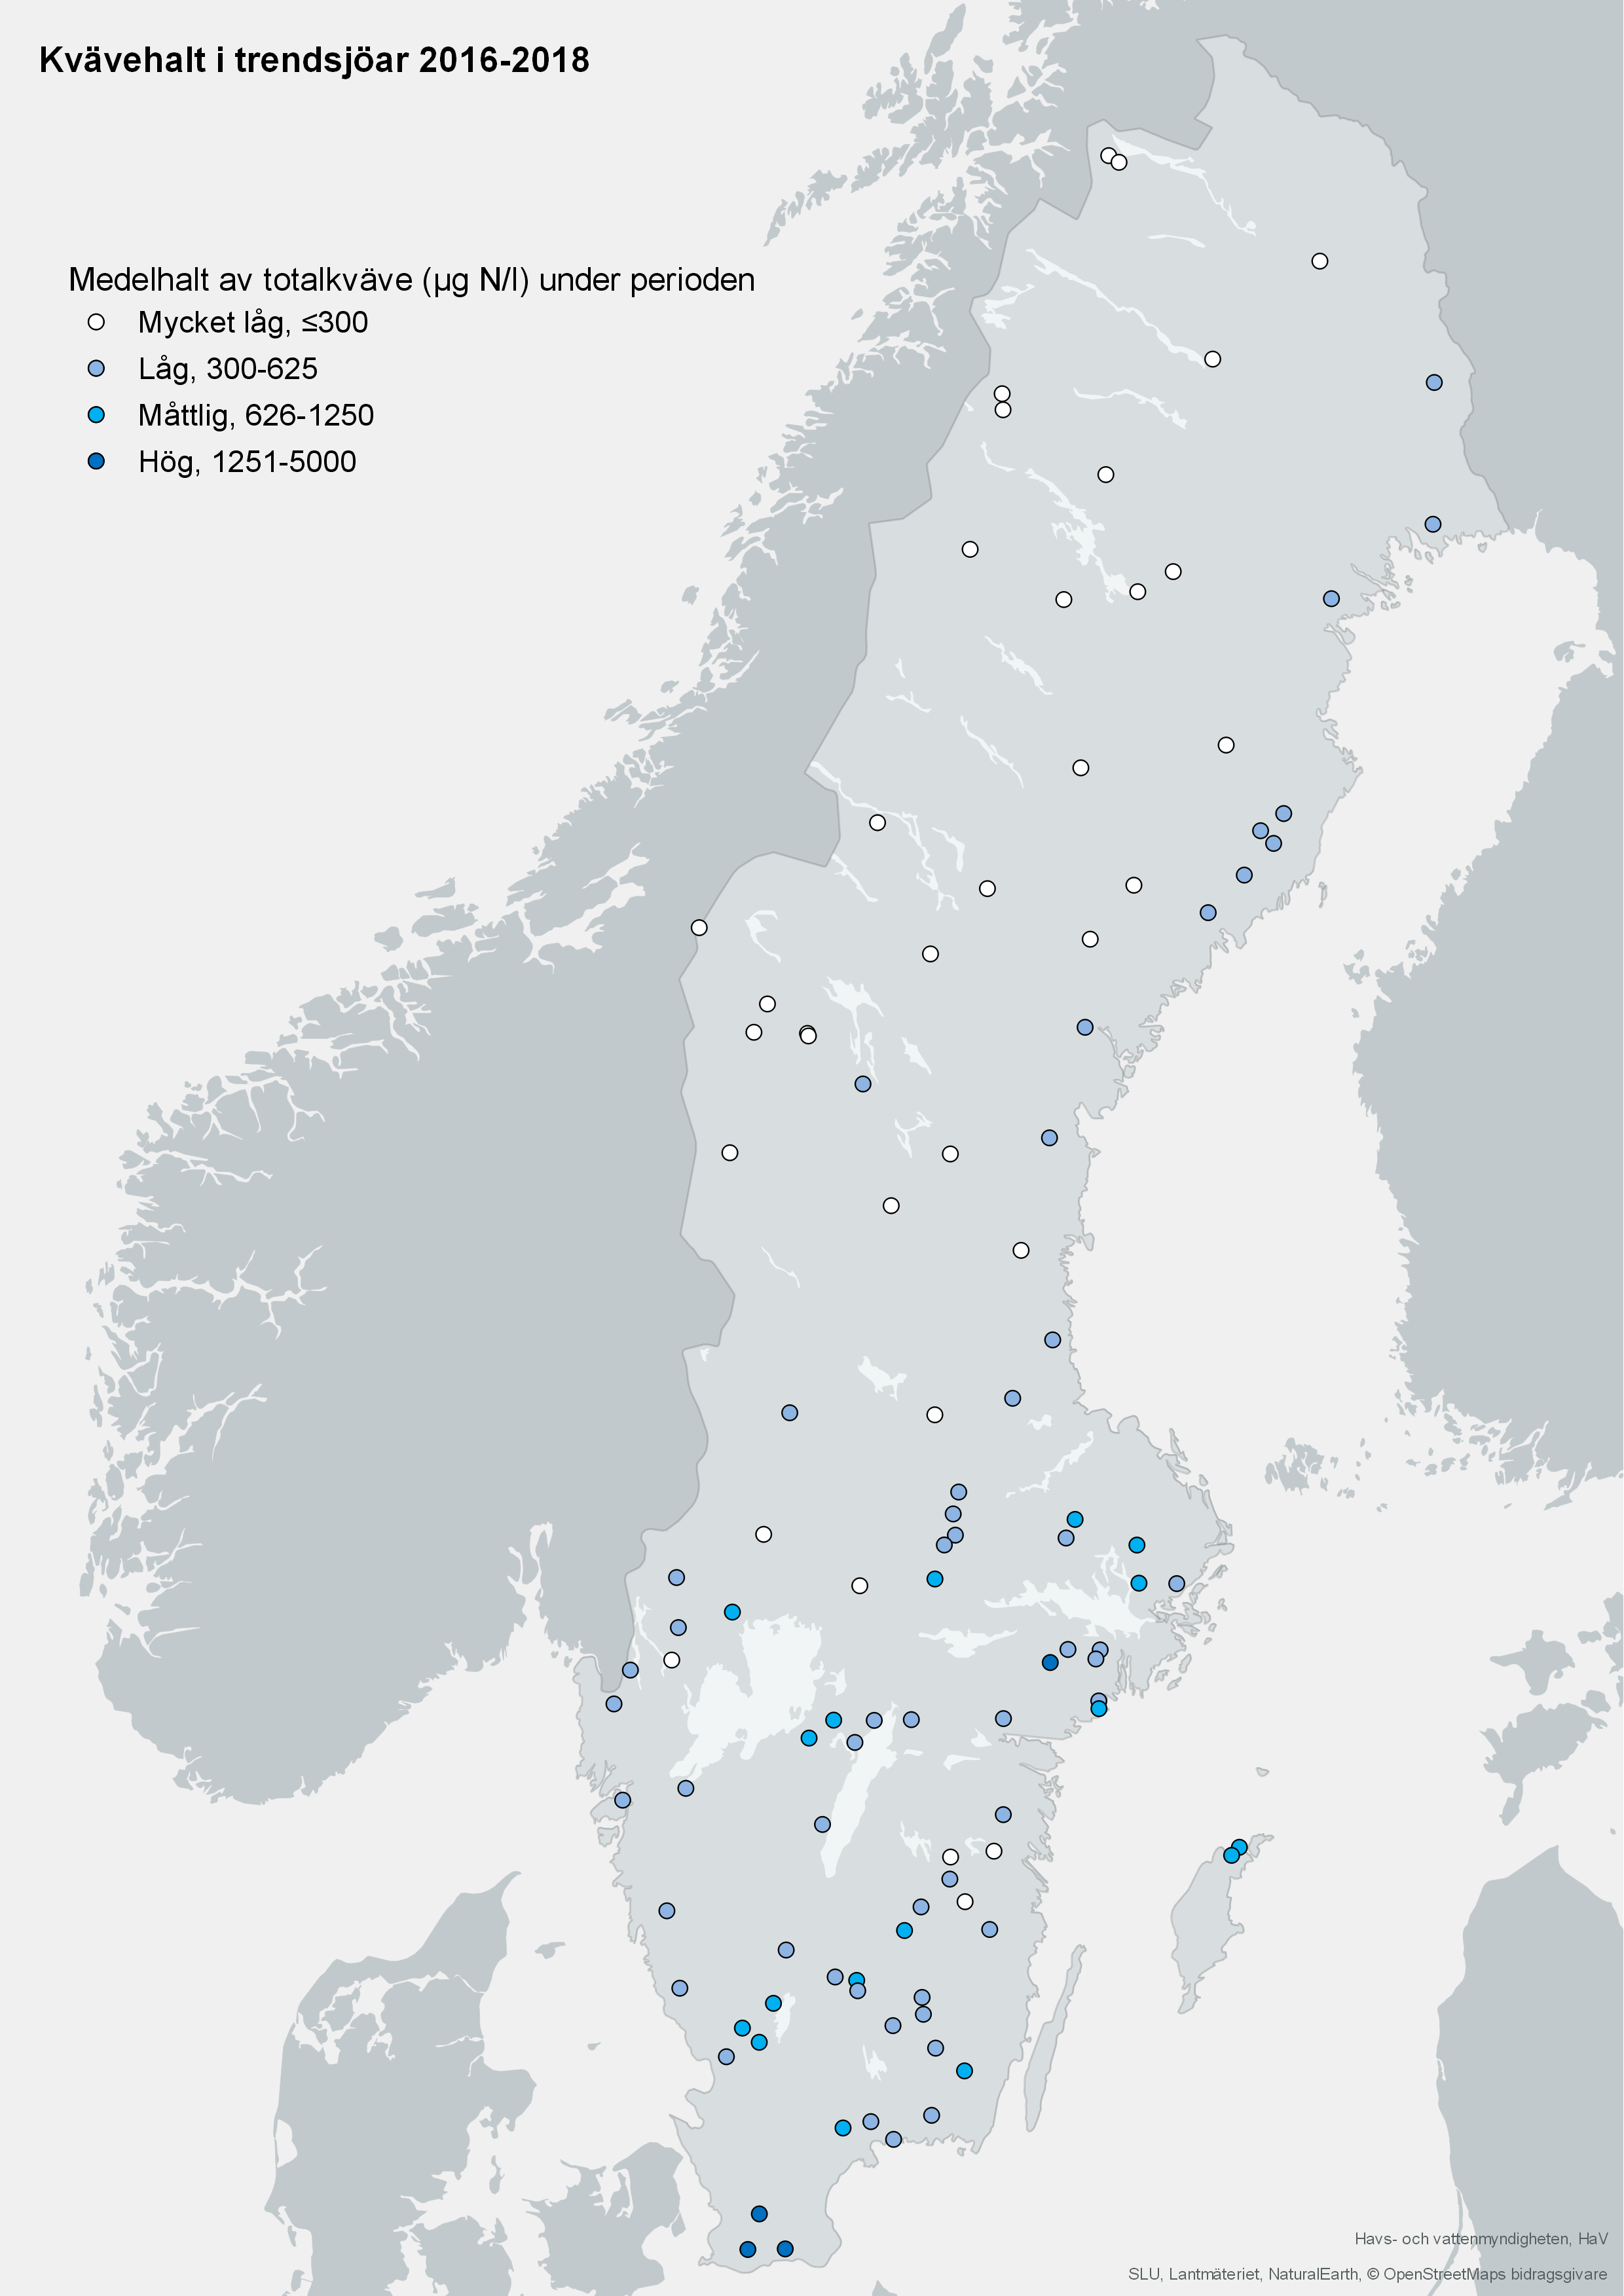 Medelhalt av totalkväve i trendsjöar 2016-2018. Karta, illustration.